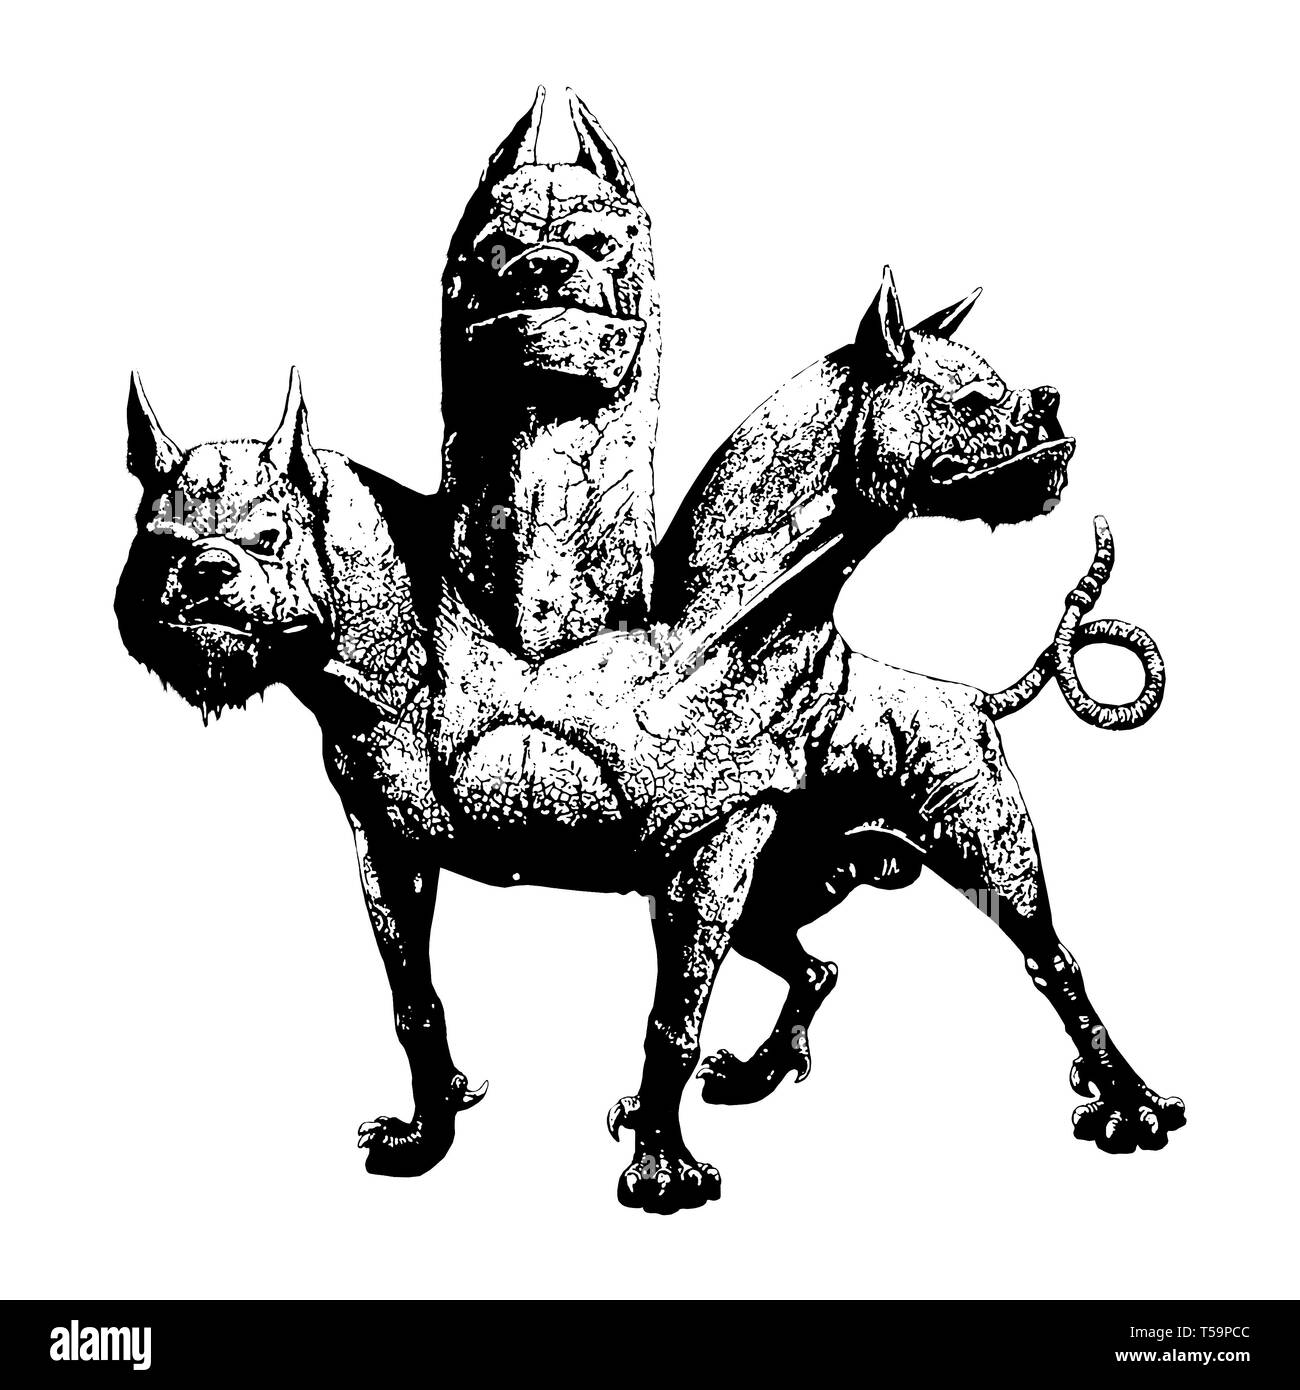 Multi vorangegangen Hund Cerberus Abbildung. Hund der Hades. Der  griechischen Mythologie Stockfotografie - Alamy